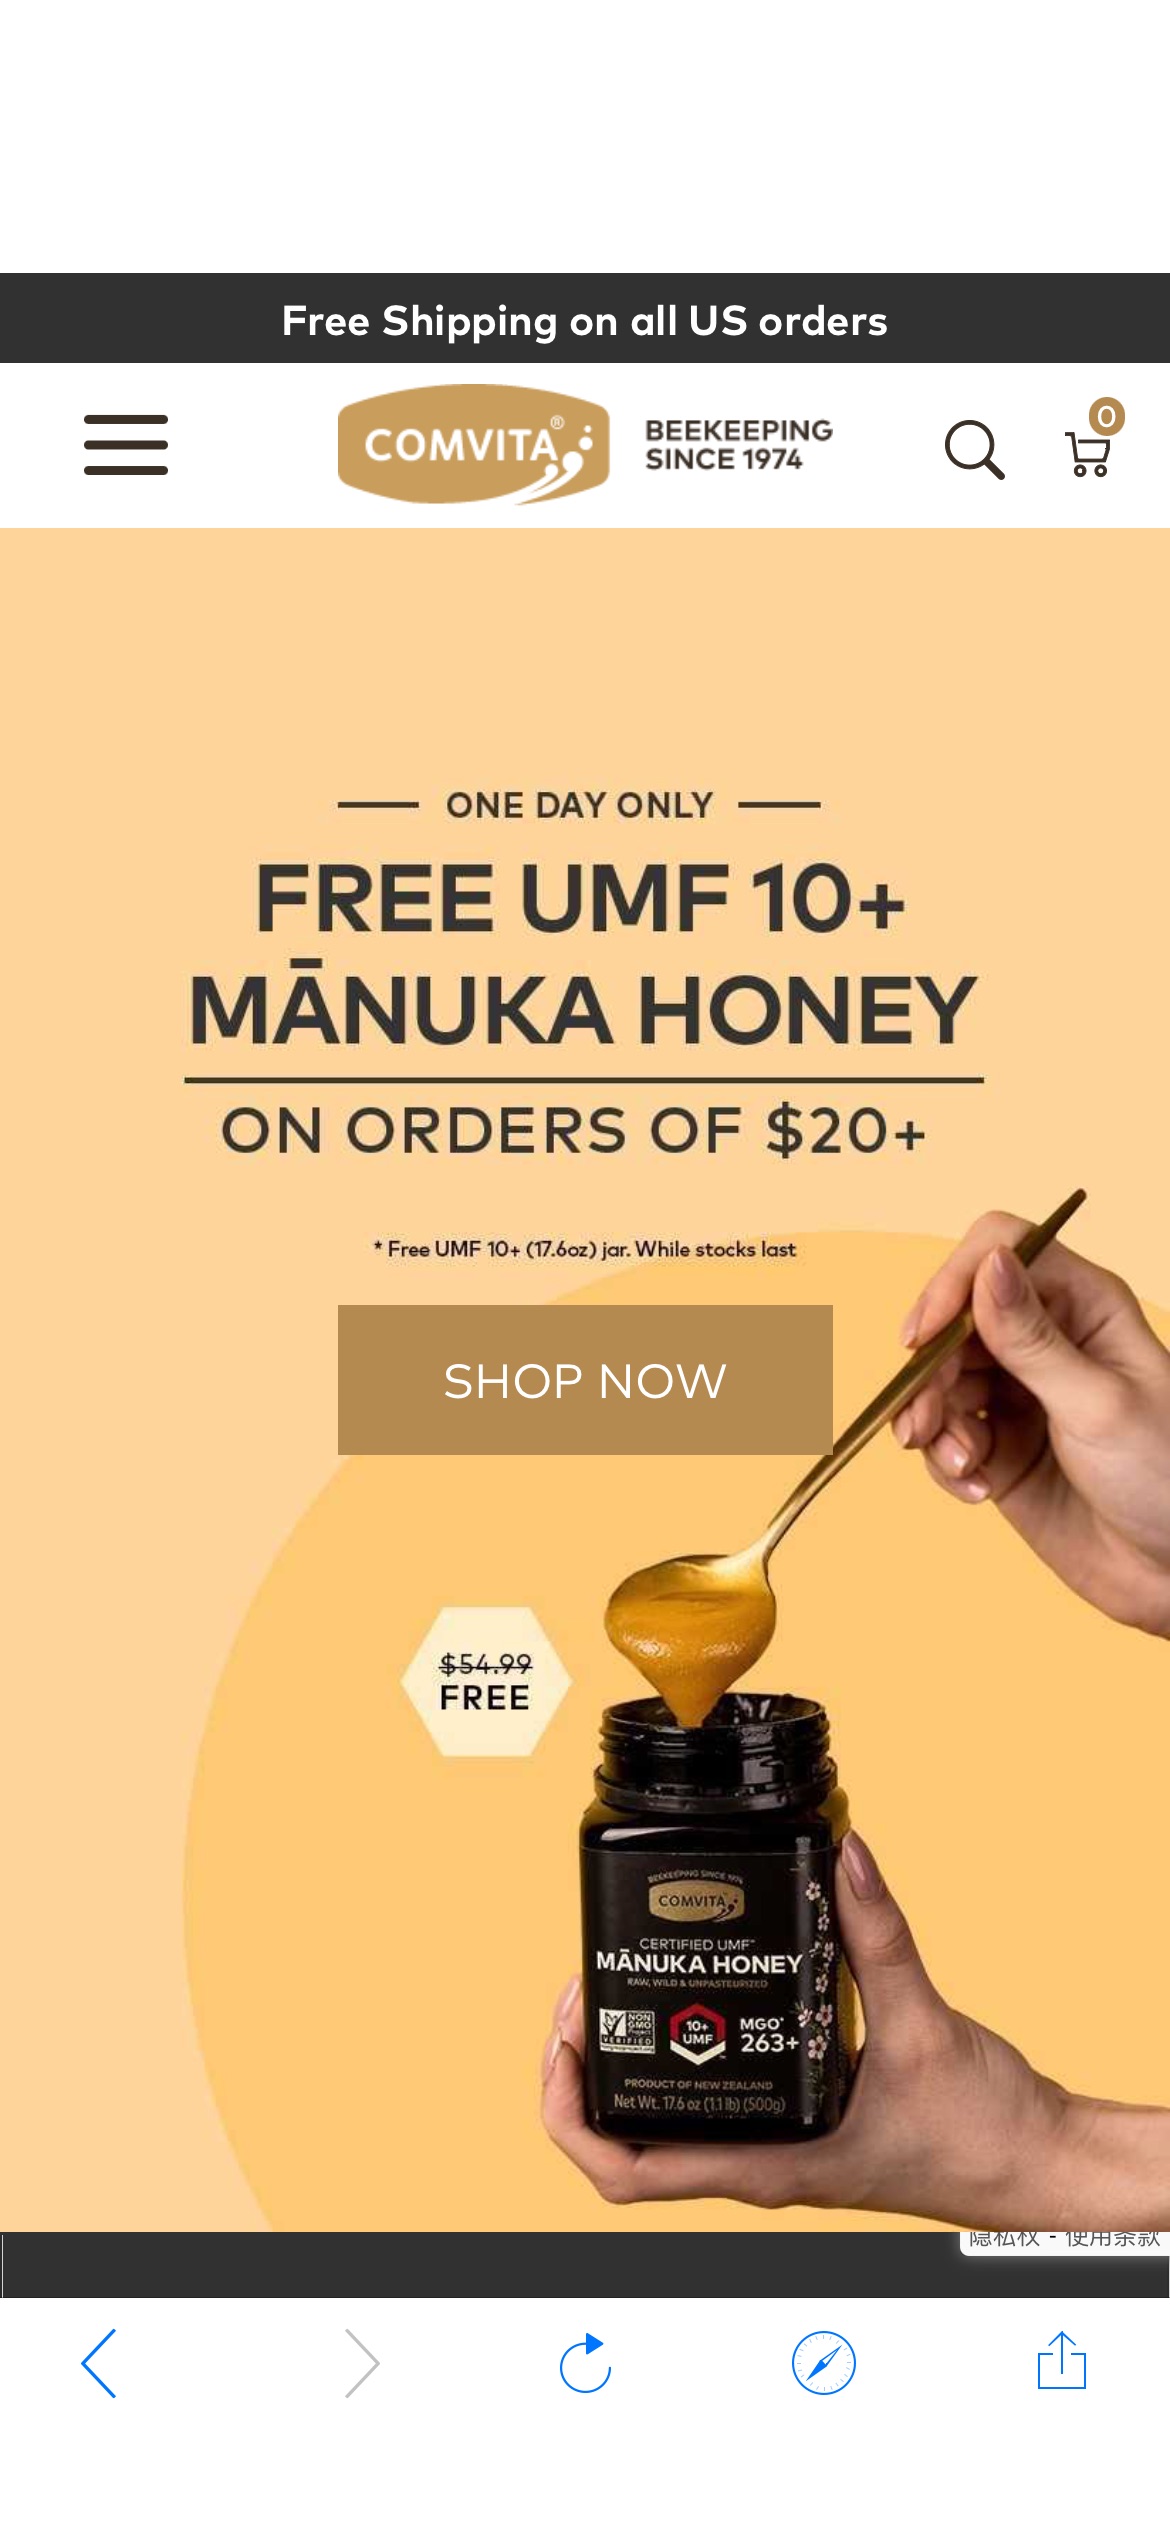 新西兰Comvita官网，消费满$20包邮送MANUKA UMF10+蜂蜜一瓶，价值$54.99